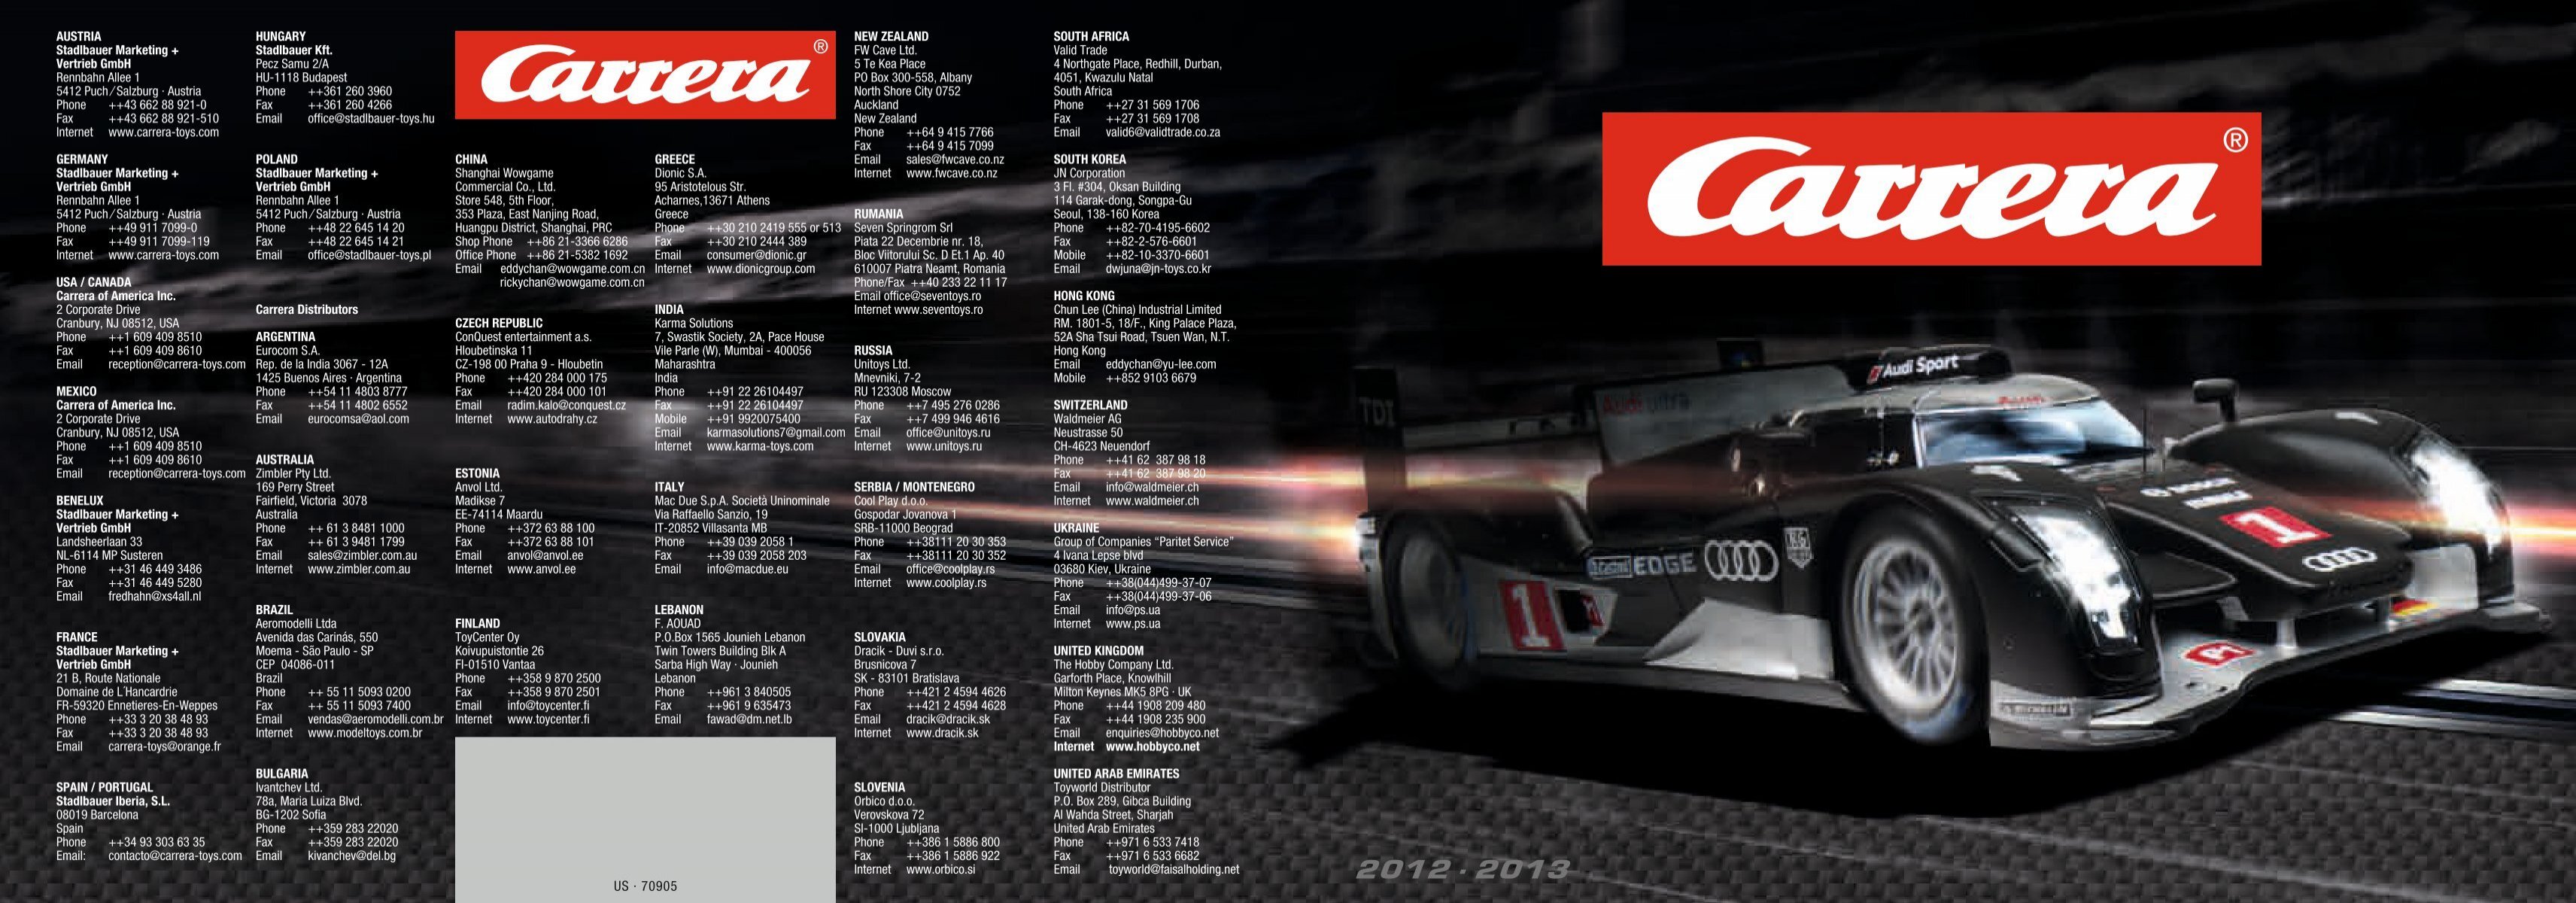 Carrera of America Formula Rivals Set, Digital 132